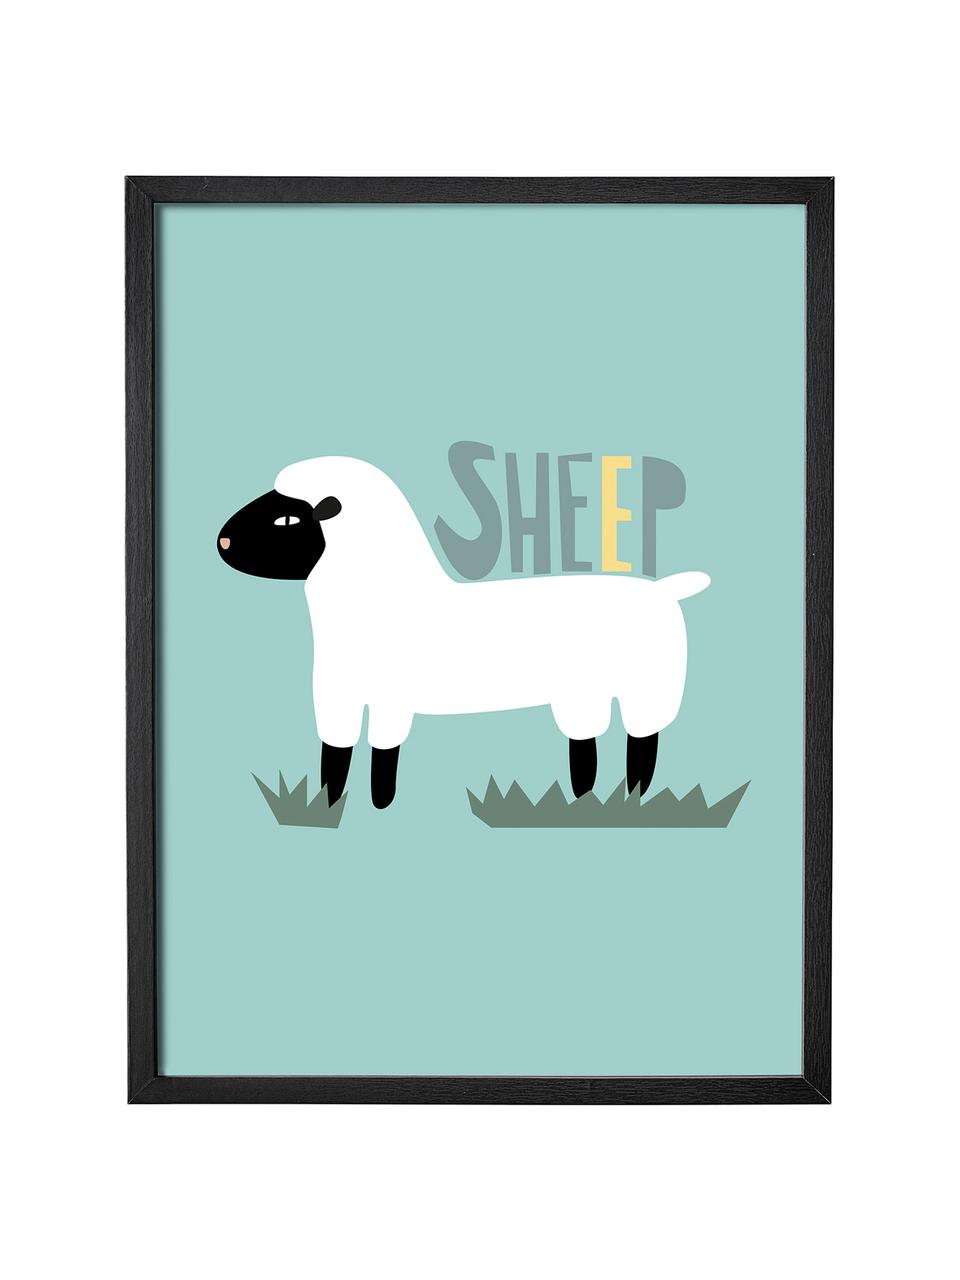 Gerahmtes Bild Sheep, Bild: Papier, Rahmen: Mitteldichte Holzfaserpla, Grün, 35 x 45 cm